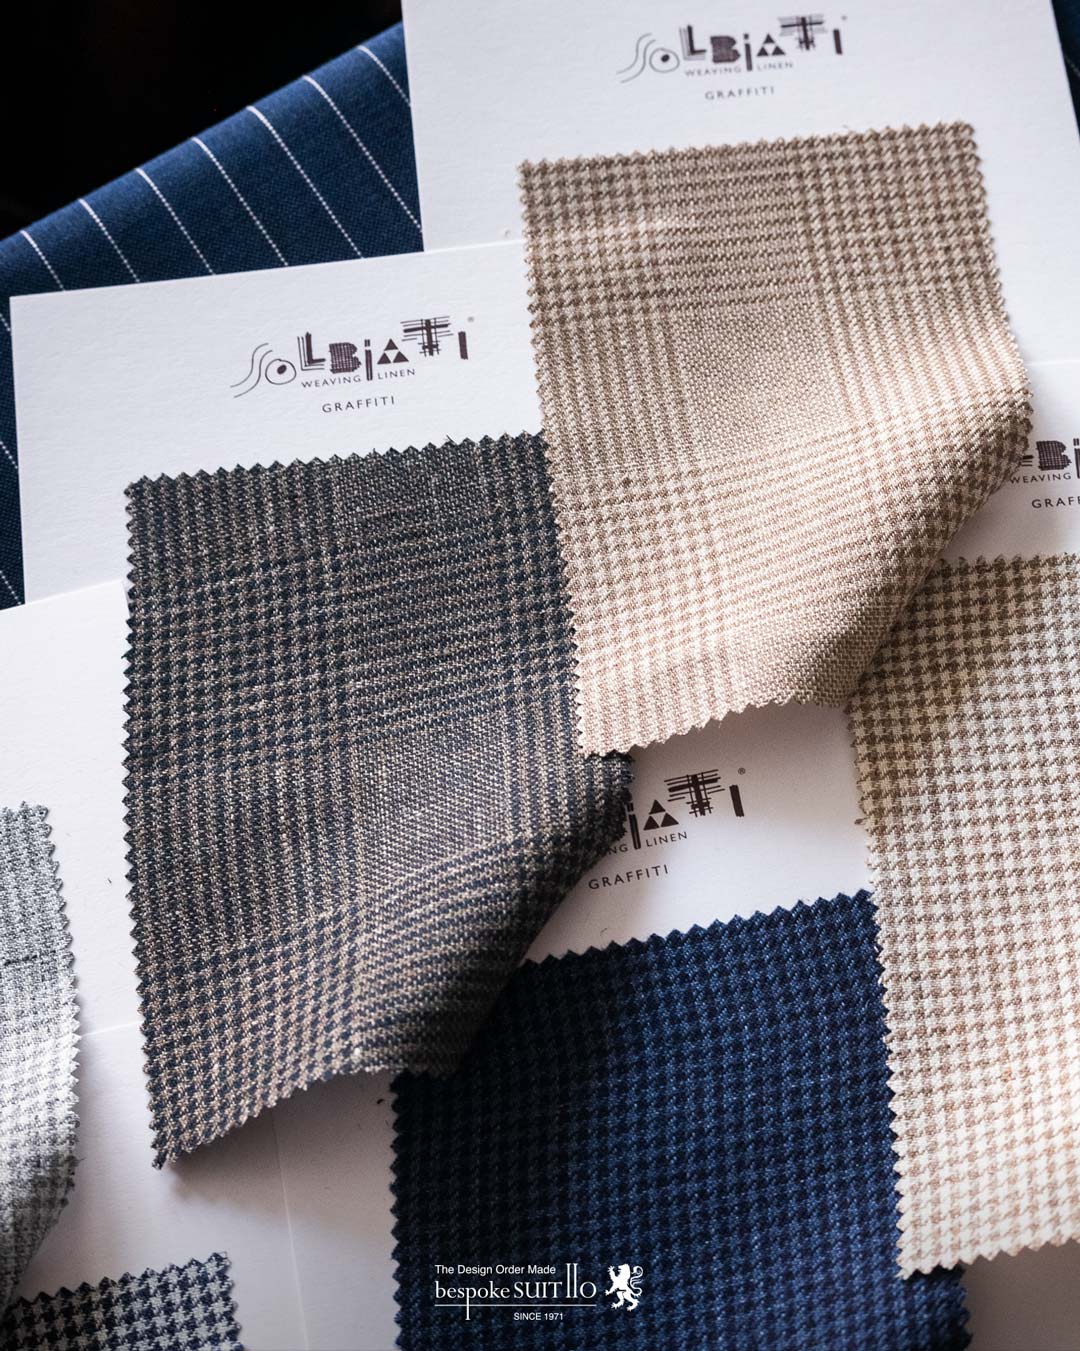 SOLBIATI（ソルビアッティ）は、イタリアの高級ファブリックブランドであり、主にリネンと麻の素材を使用した高品質な生地を生産しています。Solbiatiは、絹糸や羊毛、カシミアなど、他の素材も扱っていますが、その名声は特にリネンにあります。Solbiatiは、1929年にイタリアのBusto Arsizioで設立され、現在では世界中で有名な高級ファブリックメーカーの1つです。同社は、持続可能なファッション産業を目指し、自社で生産されたリネンや麻の生地に特化した製品を提供しています。Solbiatiの製品は、高級衣料品ブランドや高級家具メーカー、インテリアデザイナーなどに使用されており、その品質と美しさは高く評価されています。